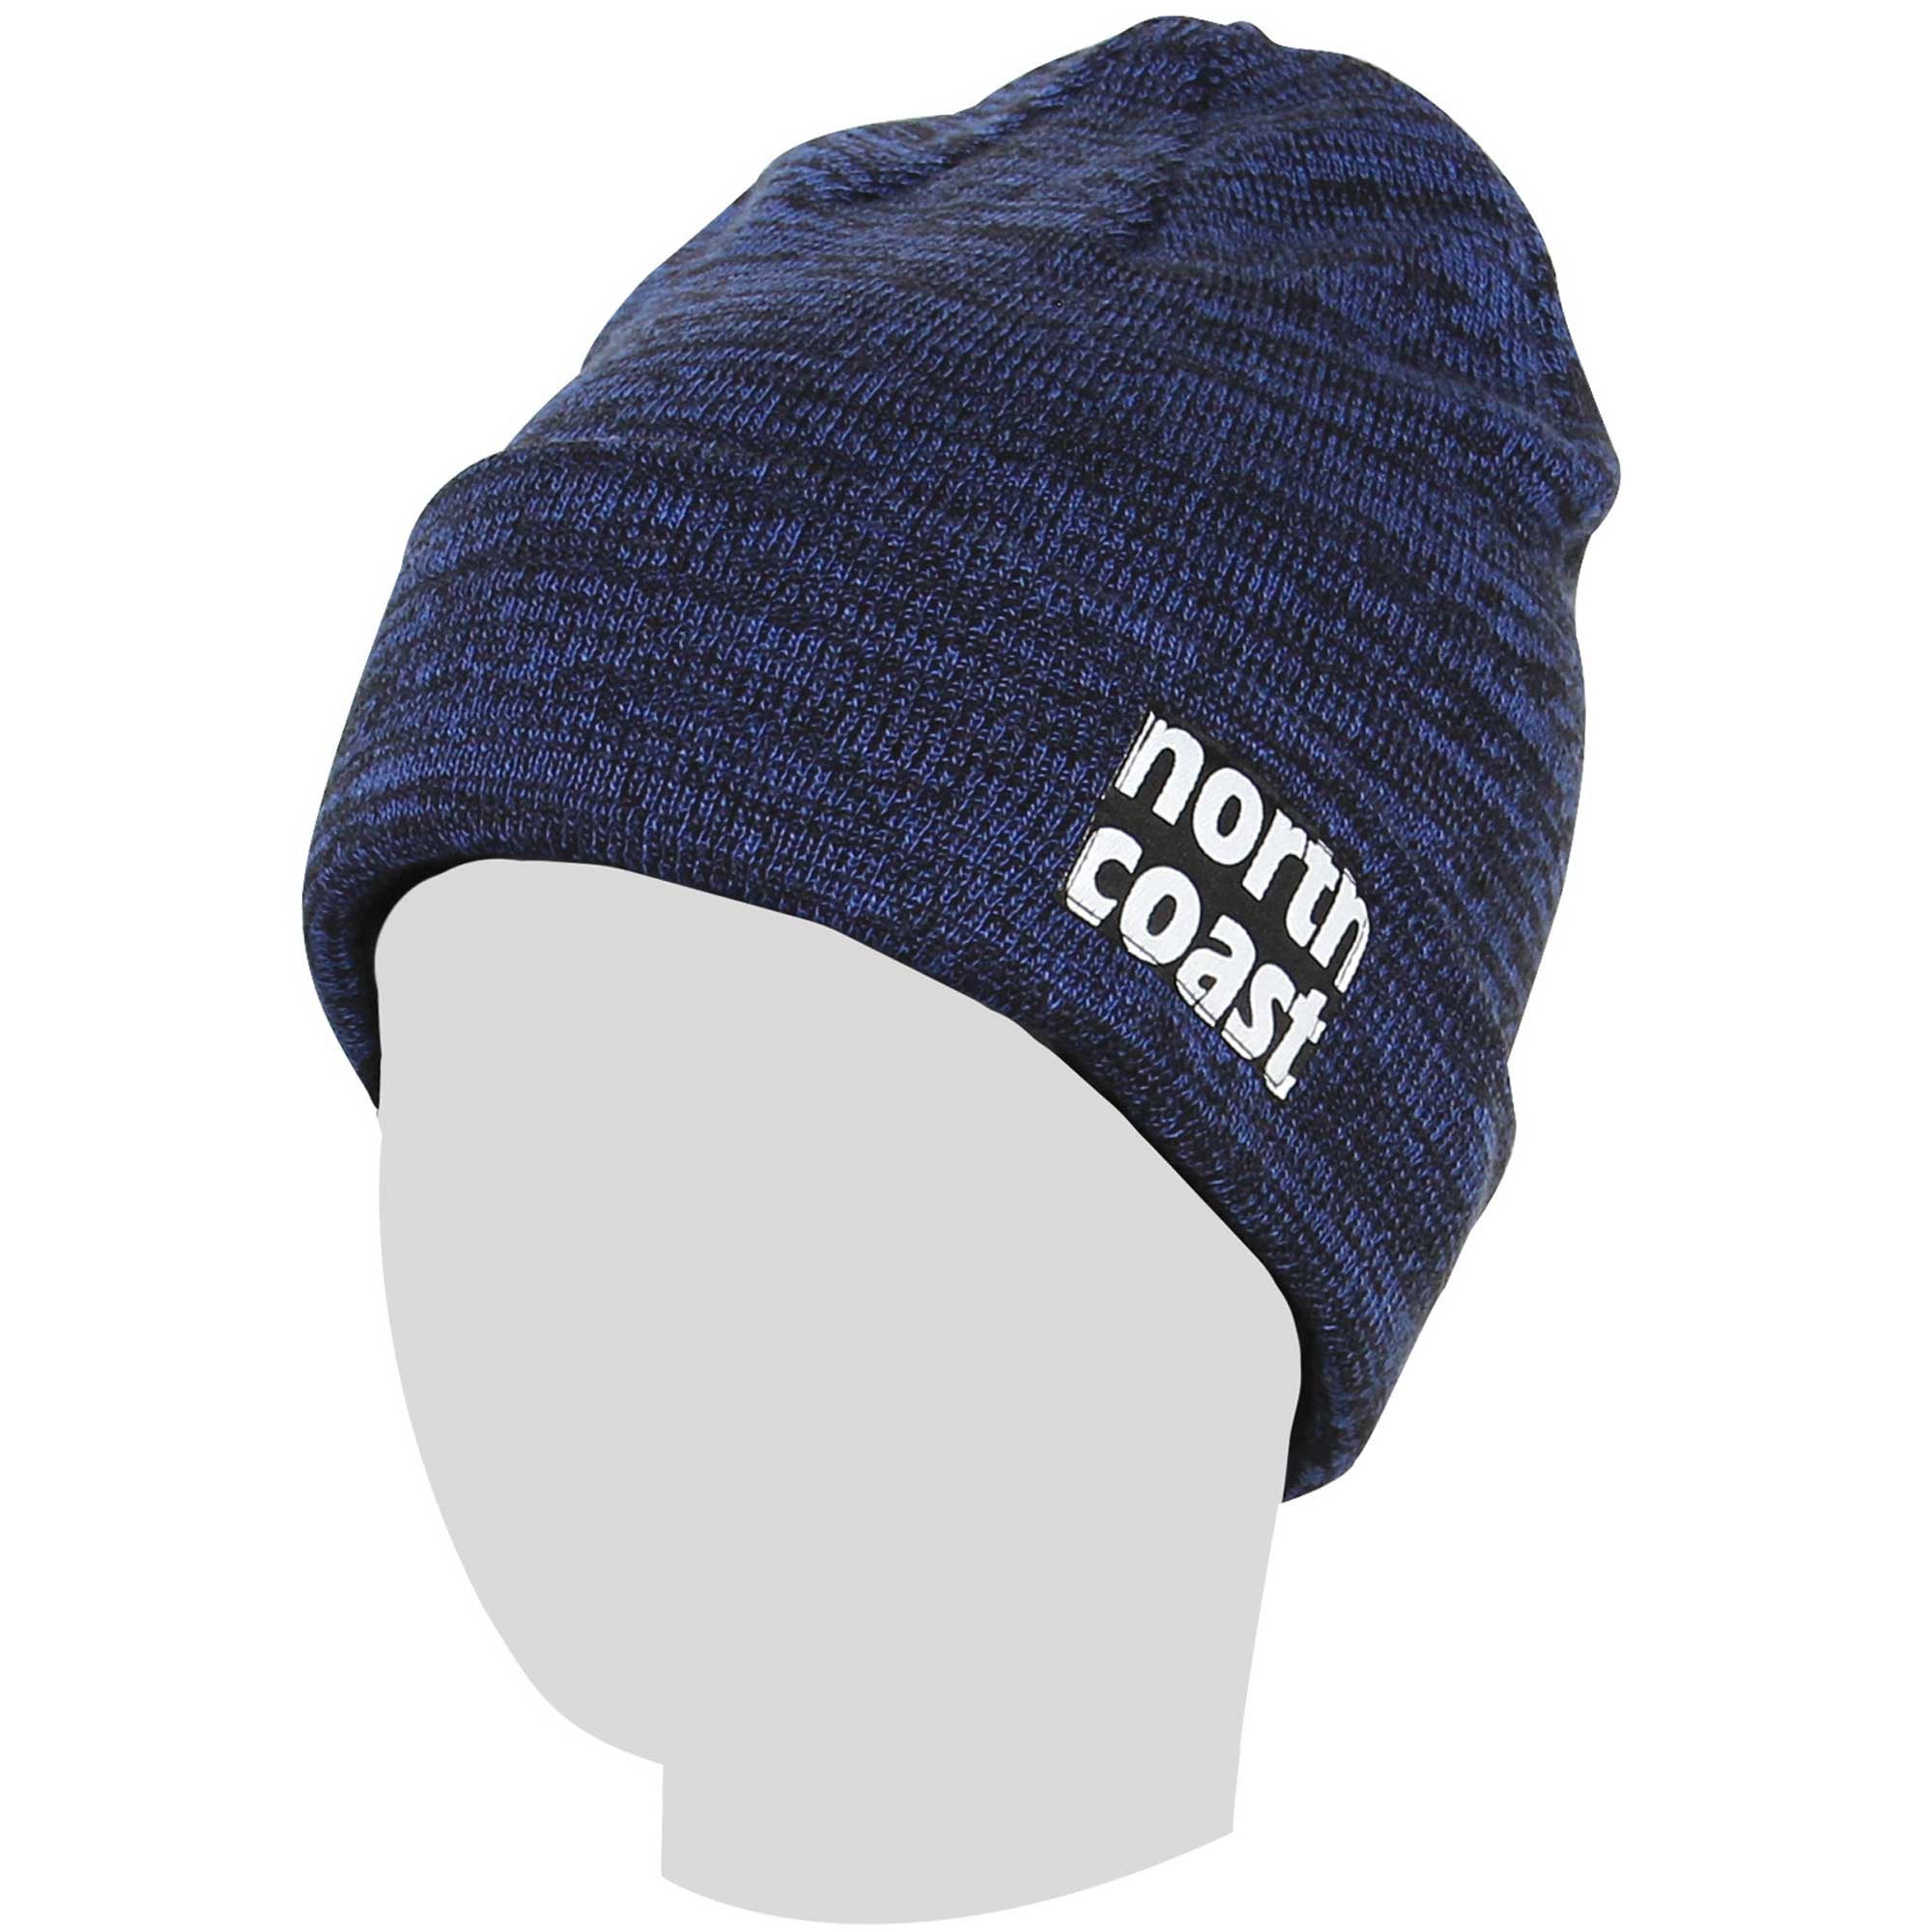 northcoast(ノースコースト) ビーニー ニット帽 スノーボード スキー 【ダブルワッチタイプ】 フリーサイズ NV NW-9250